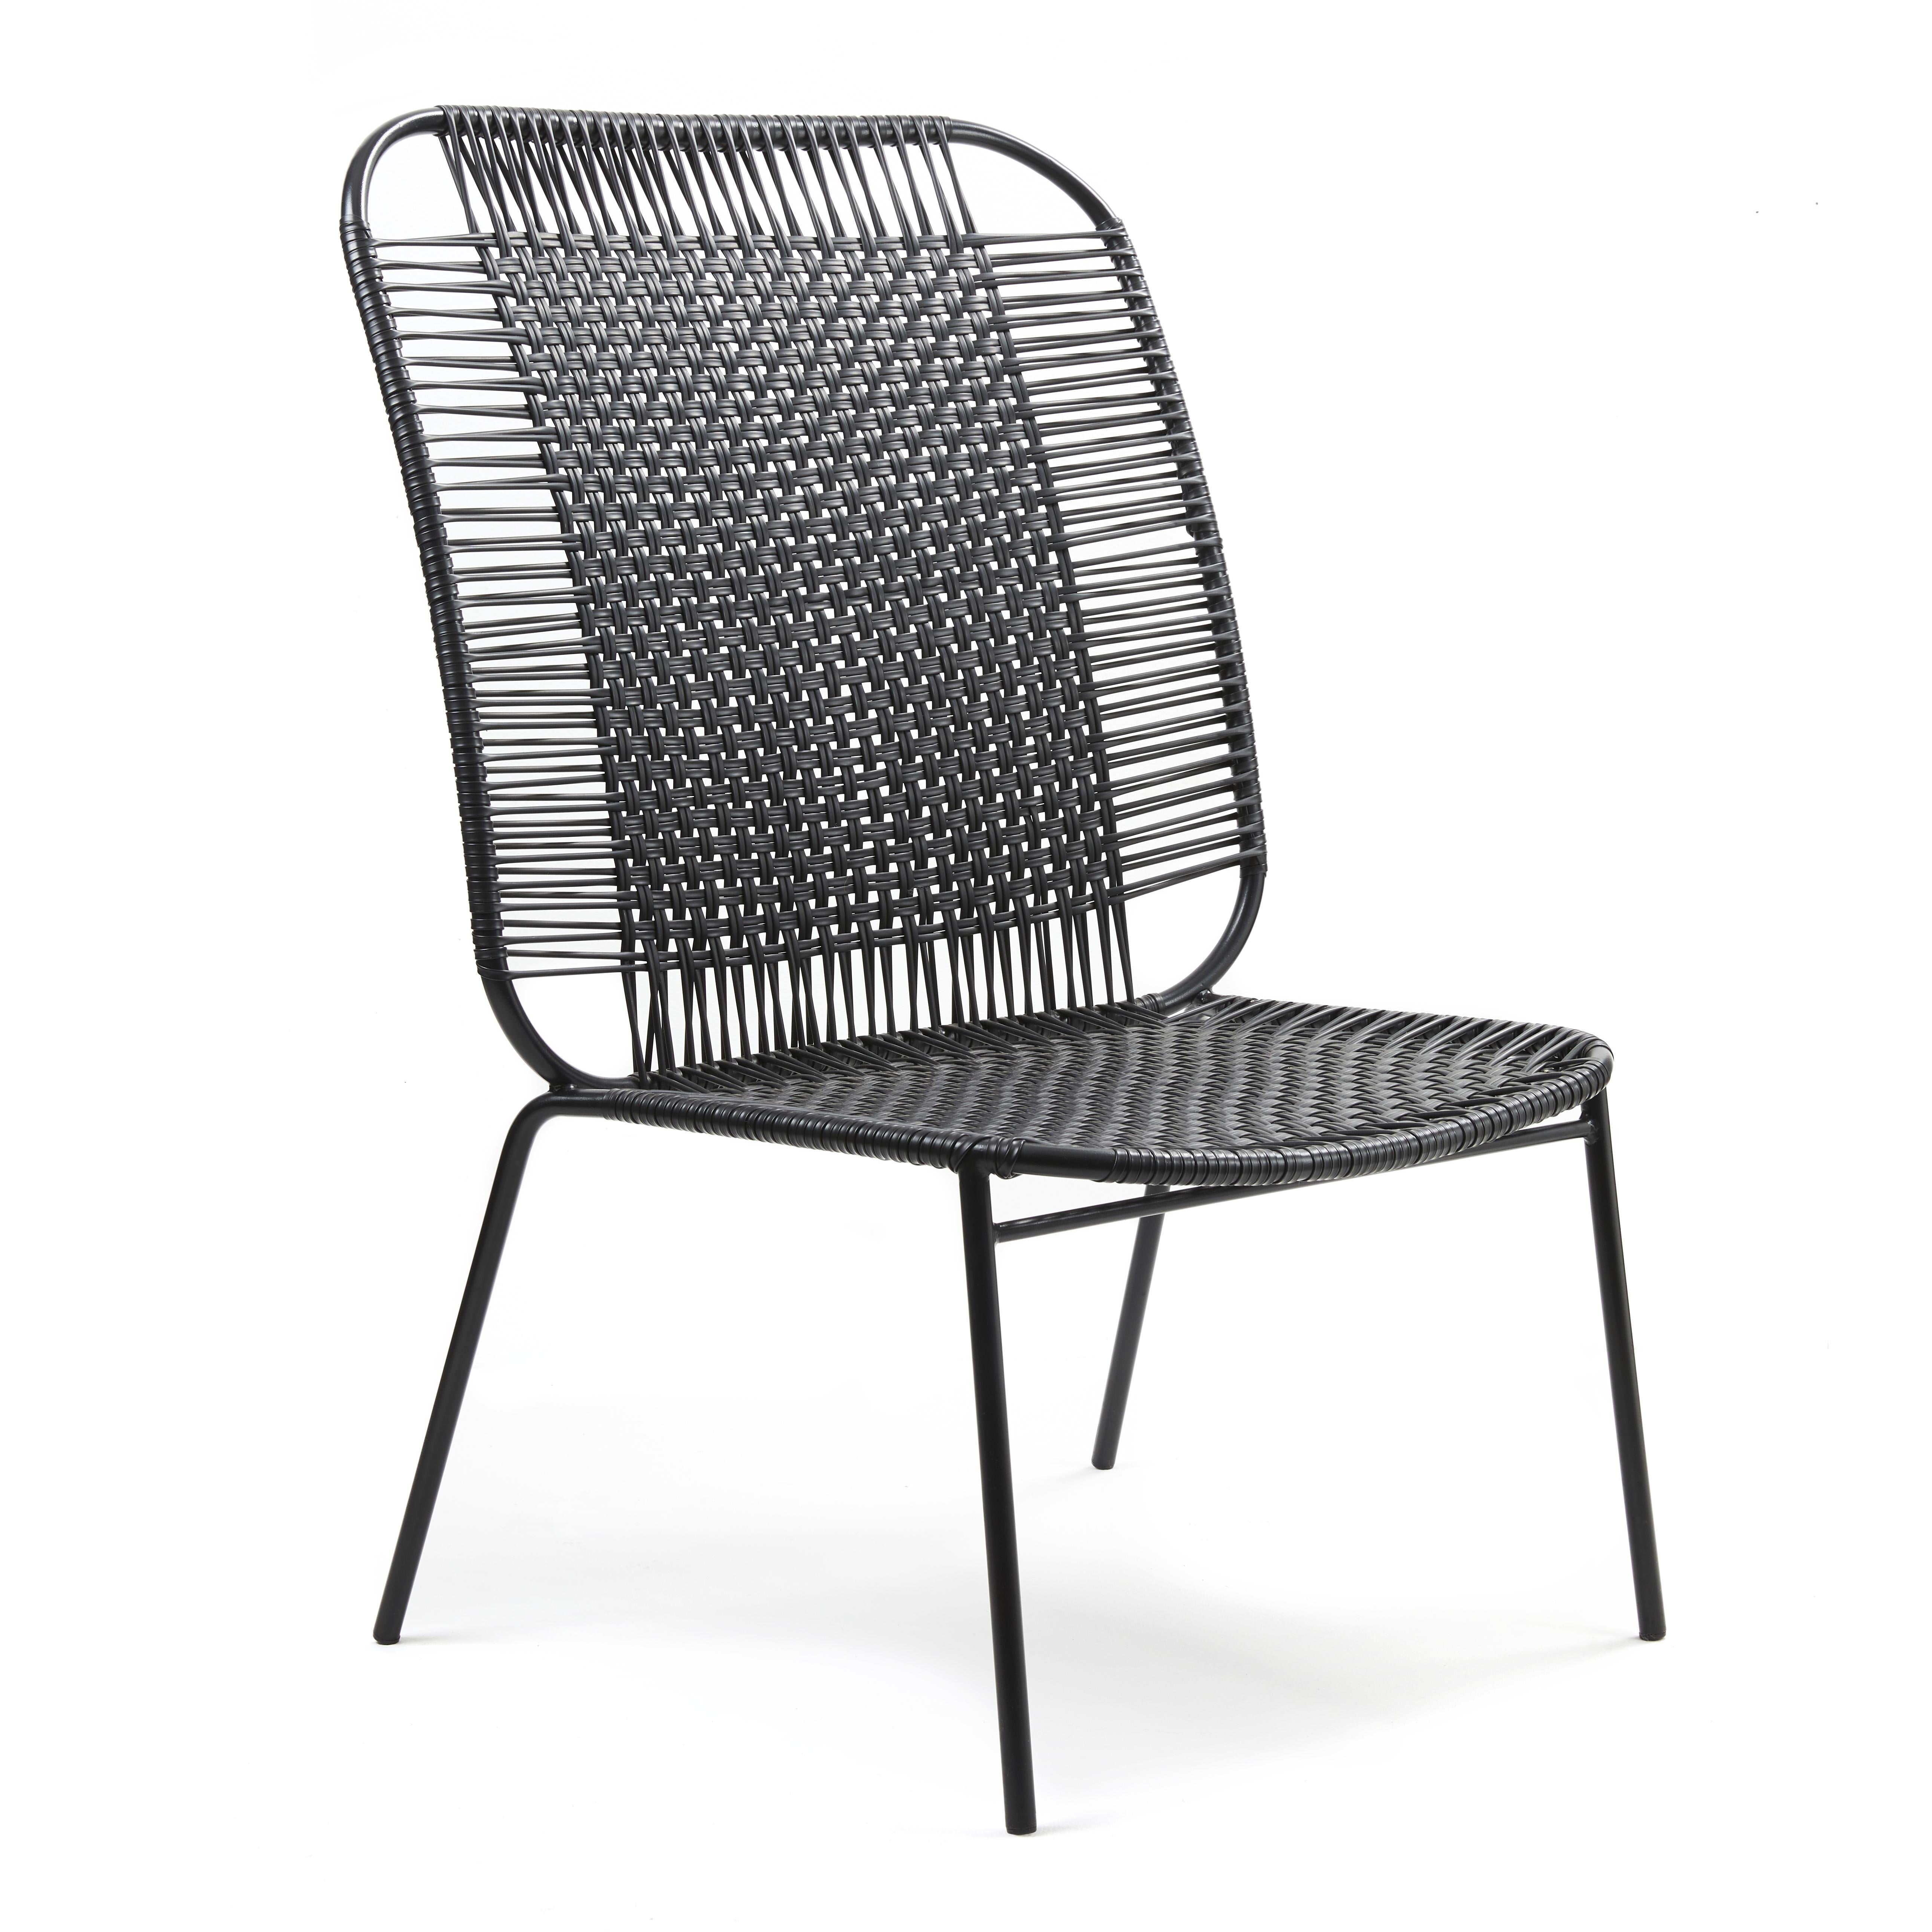 Lot de 4 chaises hautes de salon Cielo noires de Sebastian Herkner
Matériaux : Tubes d'acier galvanisés et revêtus de poudre. Les cordes en PVC sont fabriquées à partir de plastique recyclé.
Technique : Fabriqué à partir de plastique recyclé et